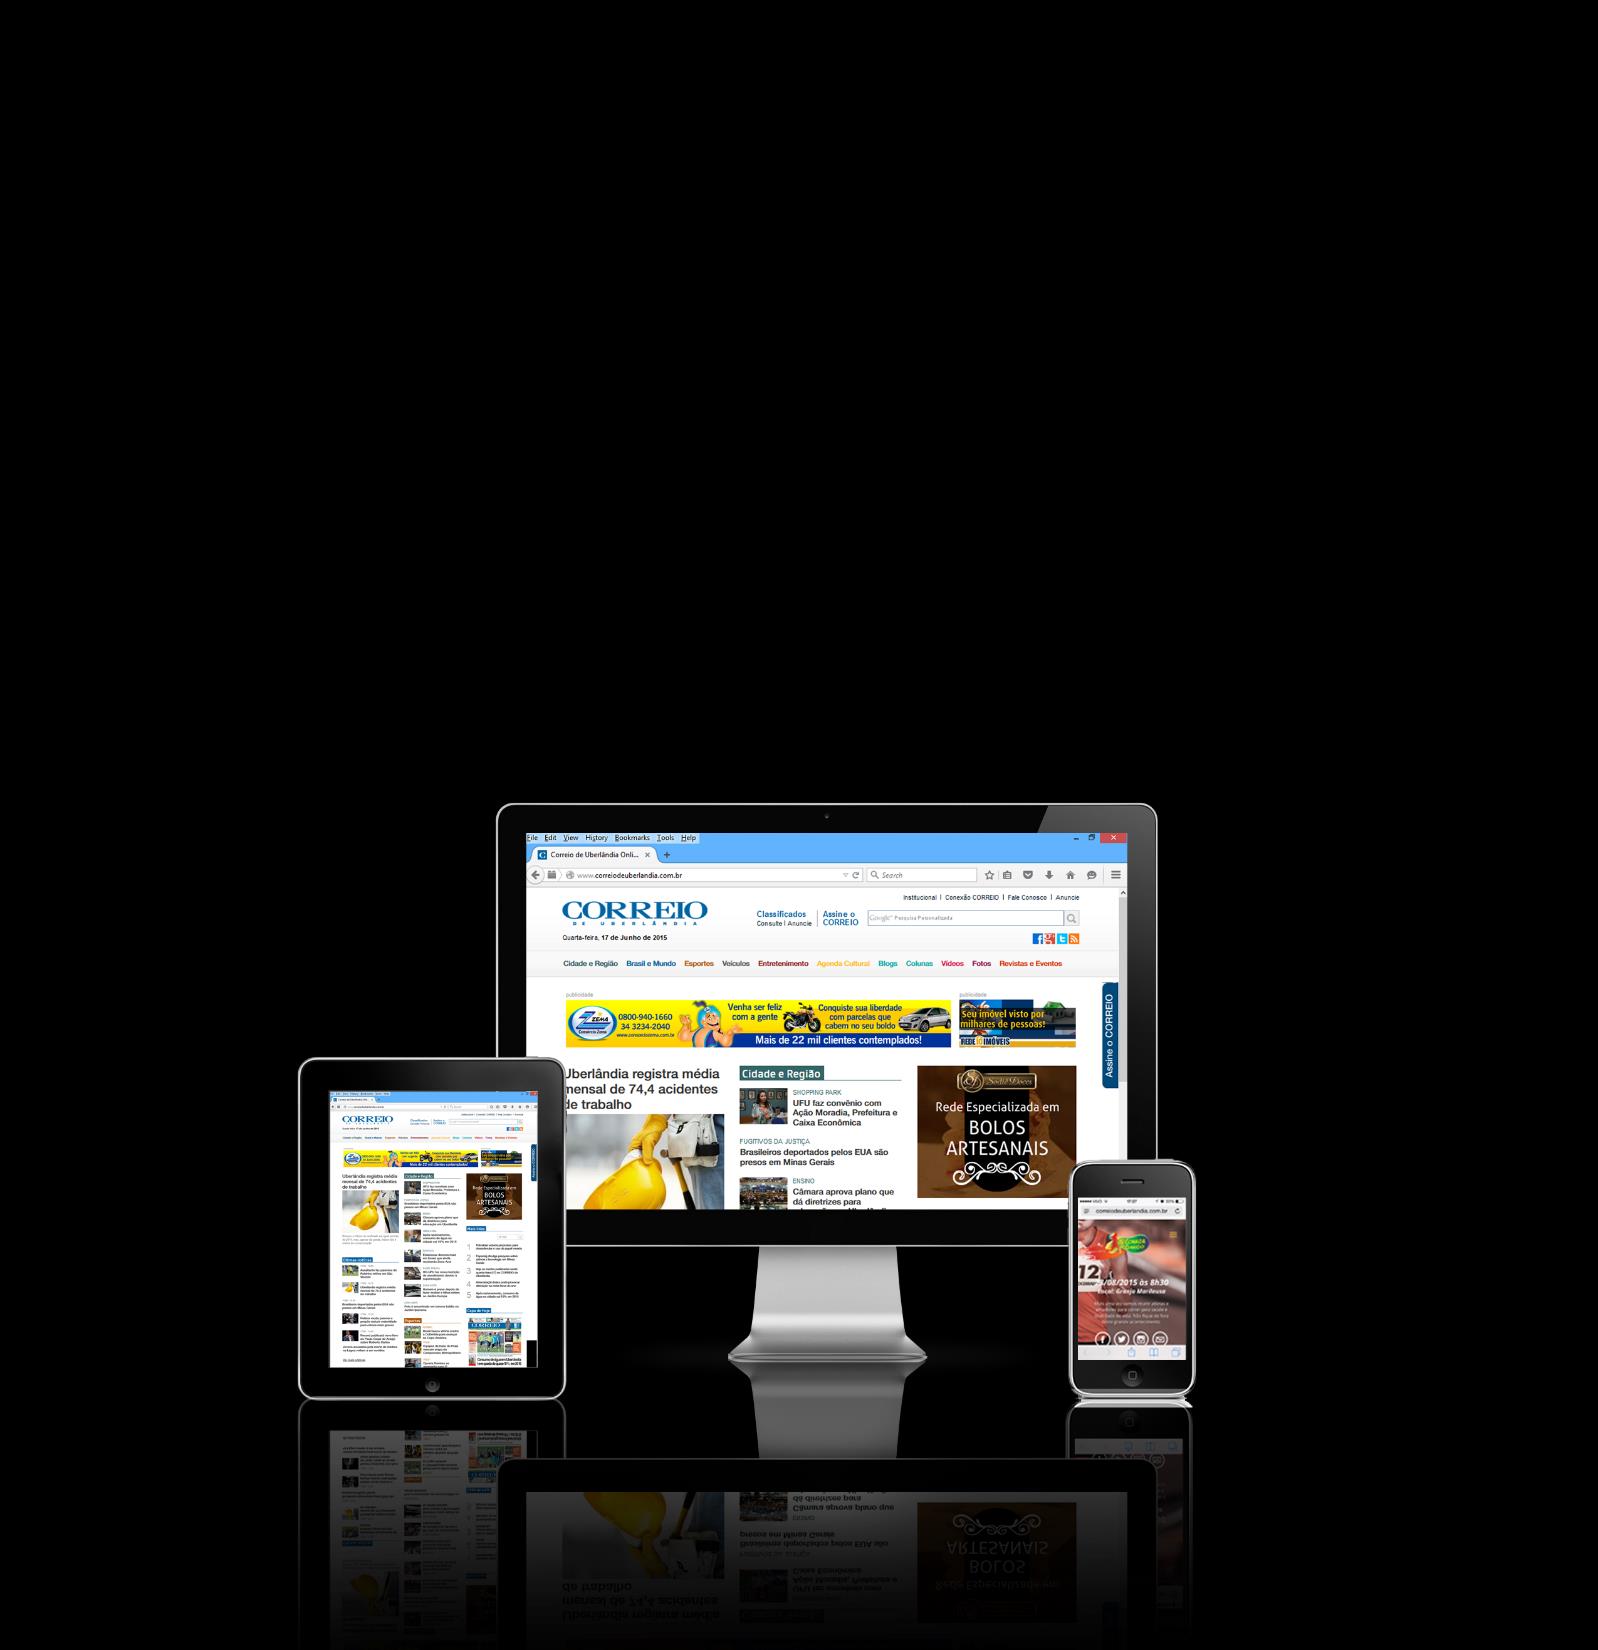 CORREIO ONLINE O Correio Online disponibiliza notícias em tempo real, conteúdo com interatividade e integração com as redes sociais.